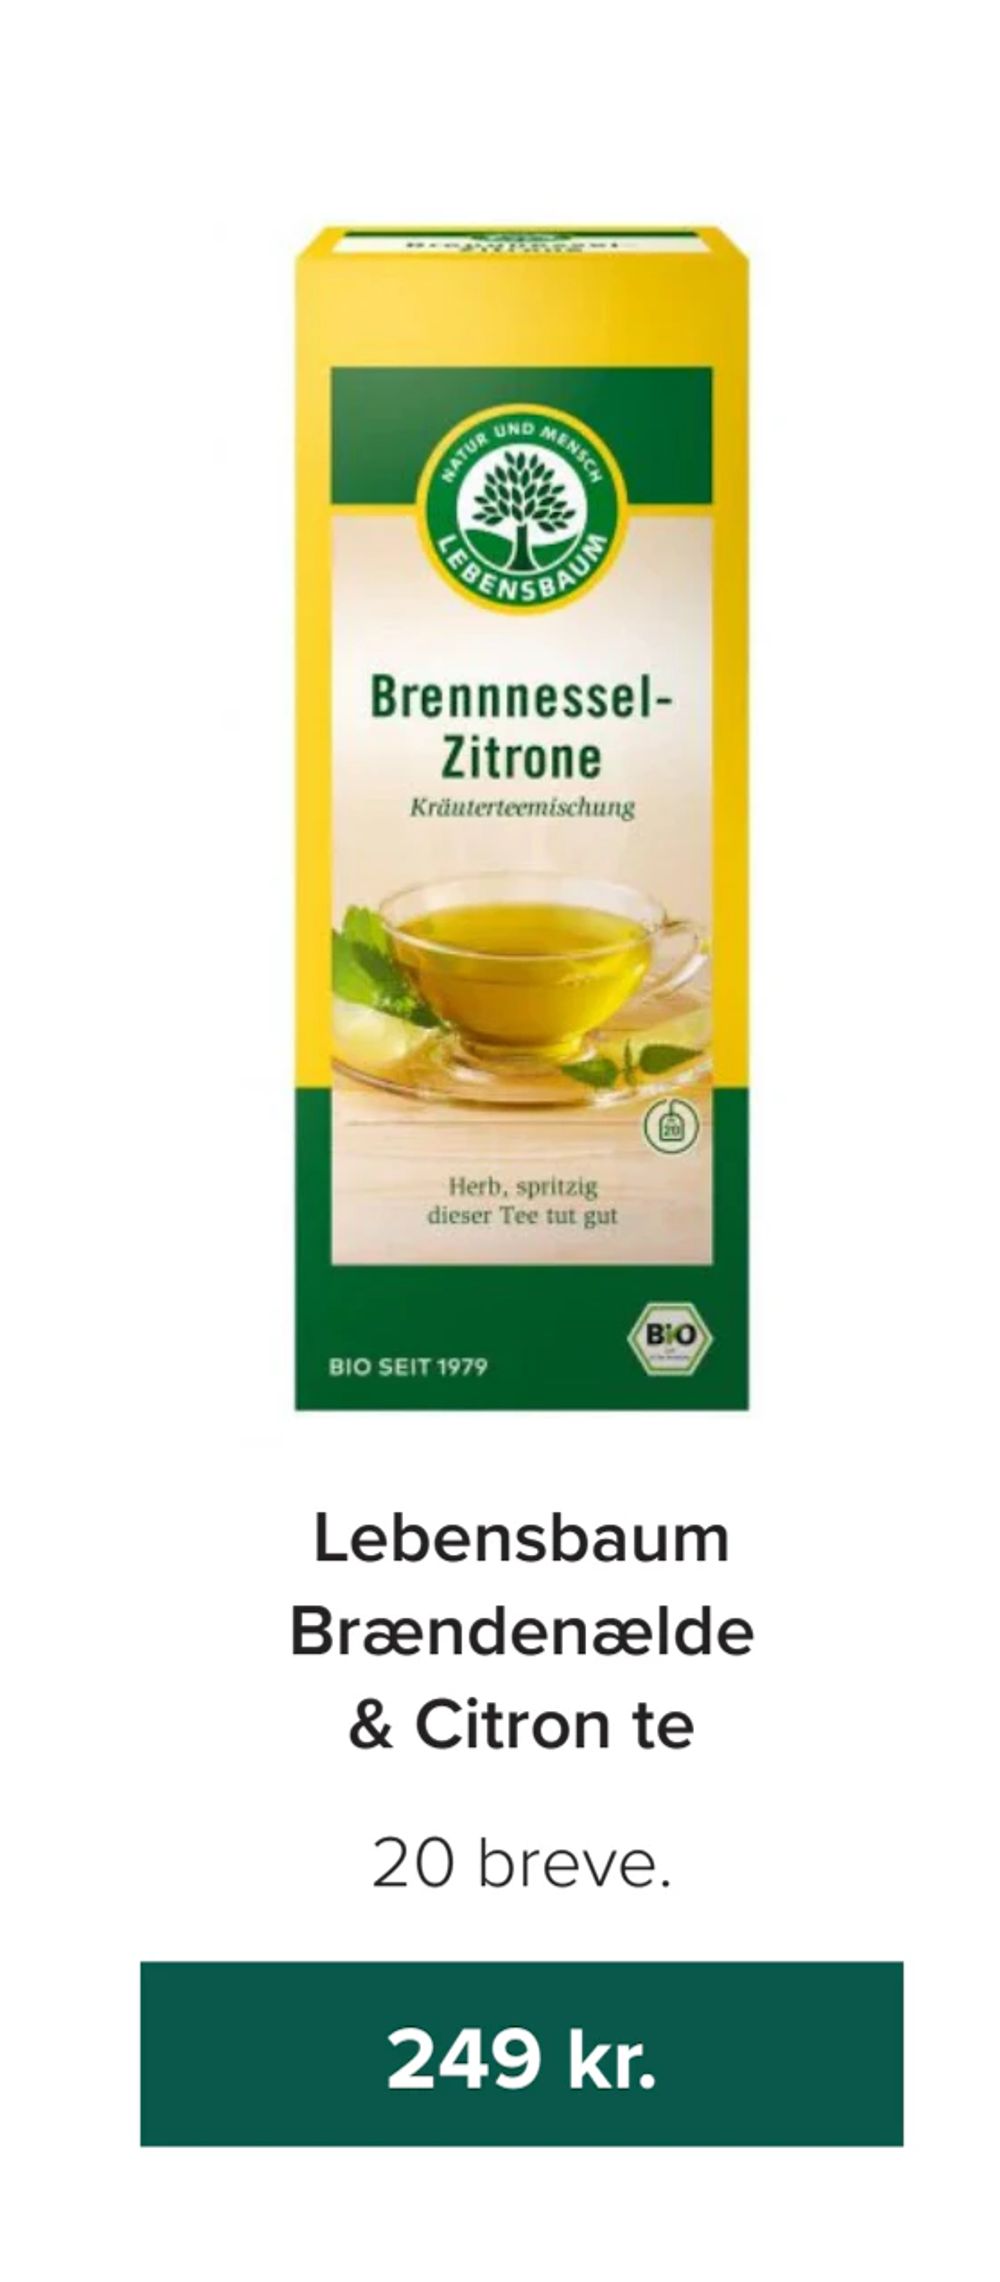 Tilbud på Lebensbaum Brændenælde & Citron te fra Helsemin til 249 kr.